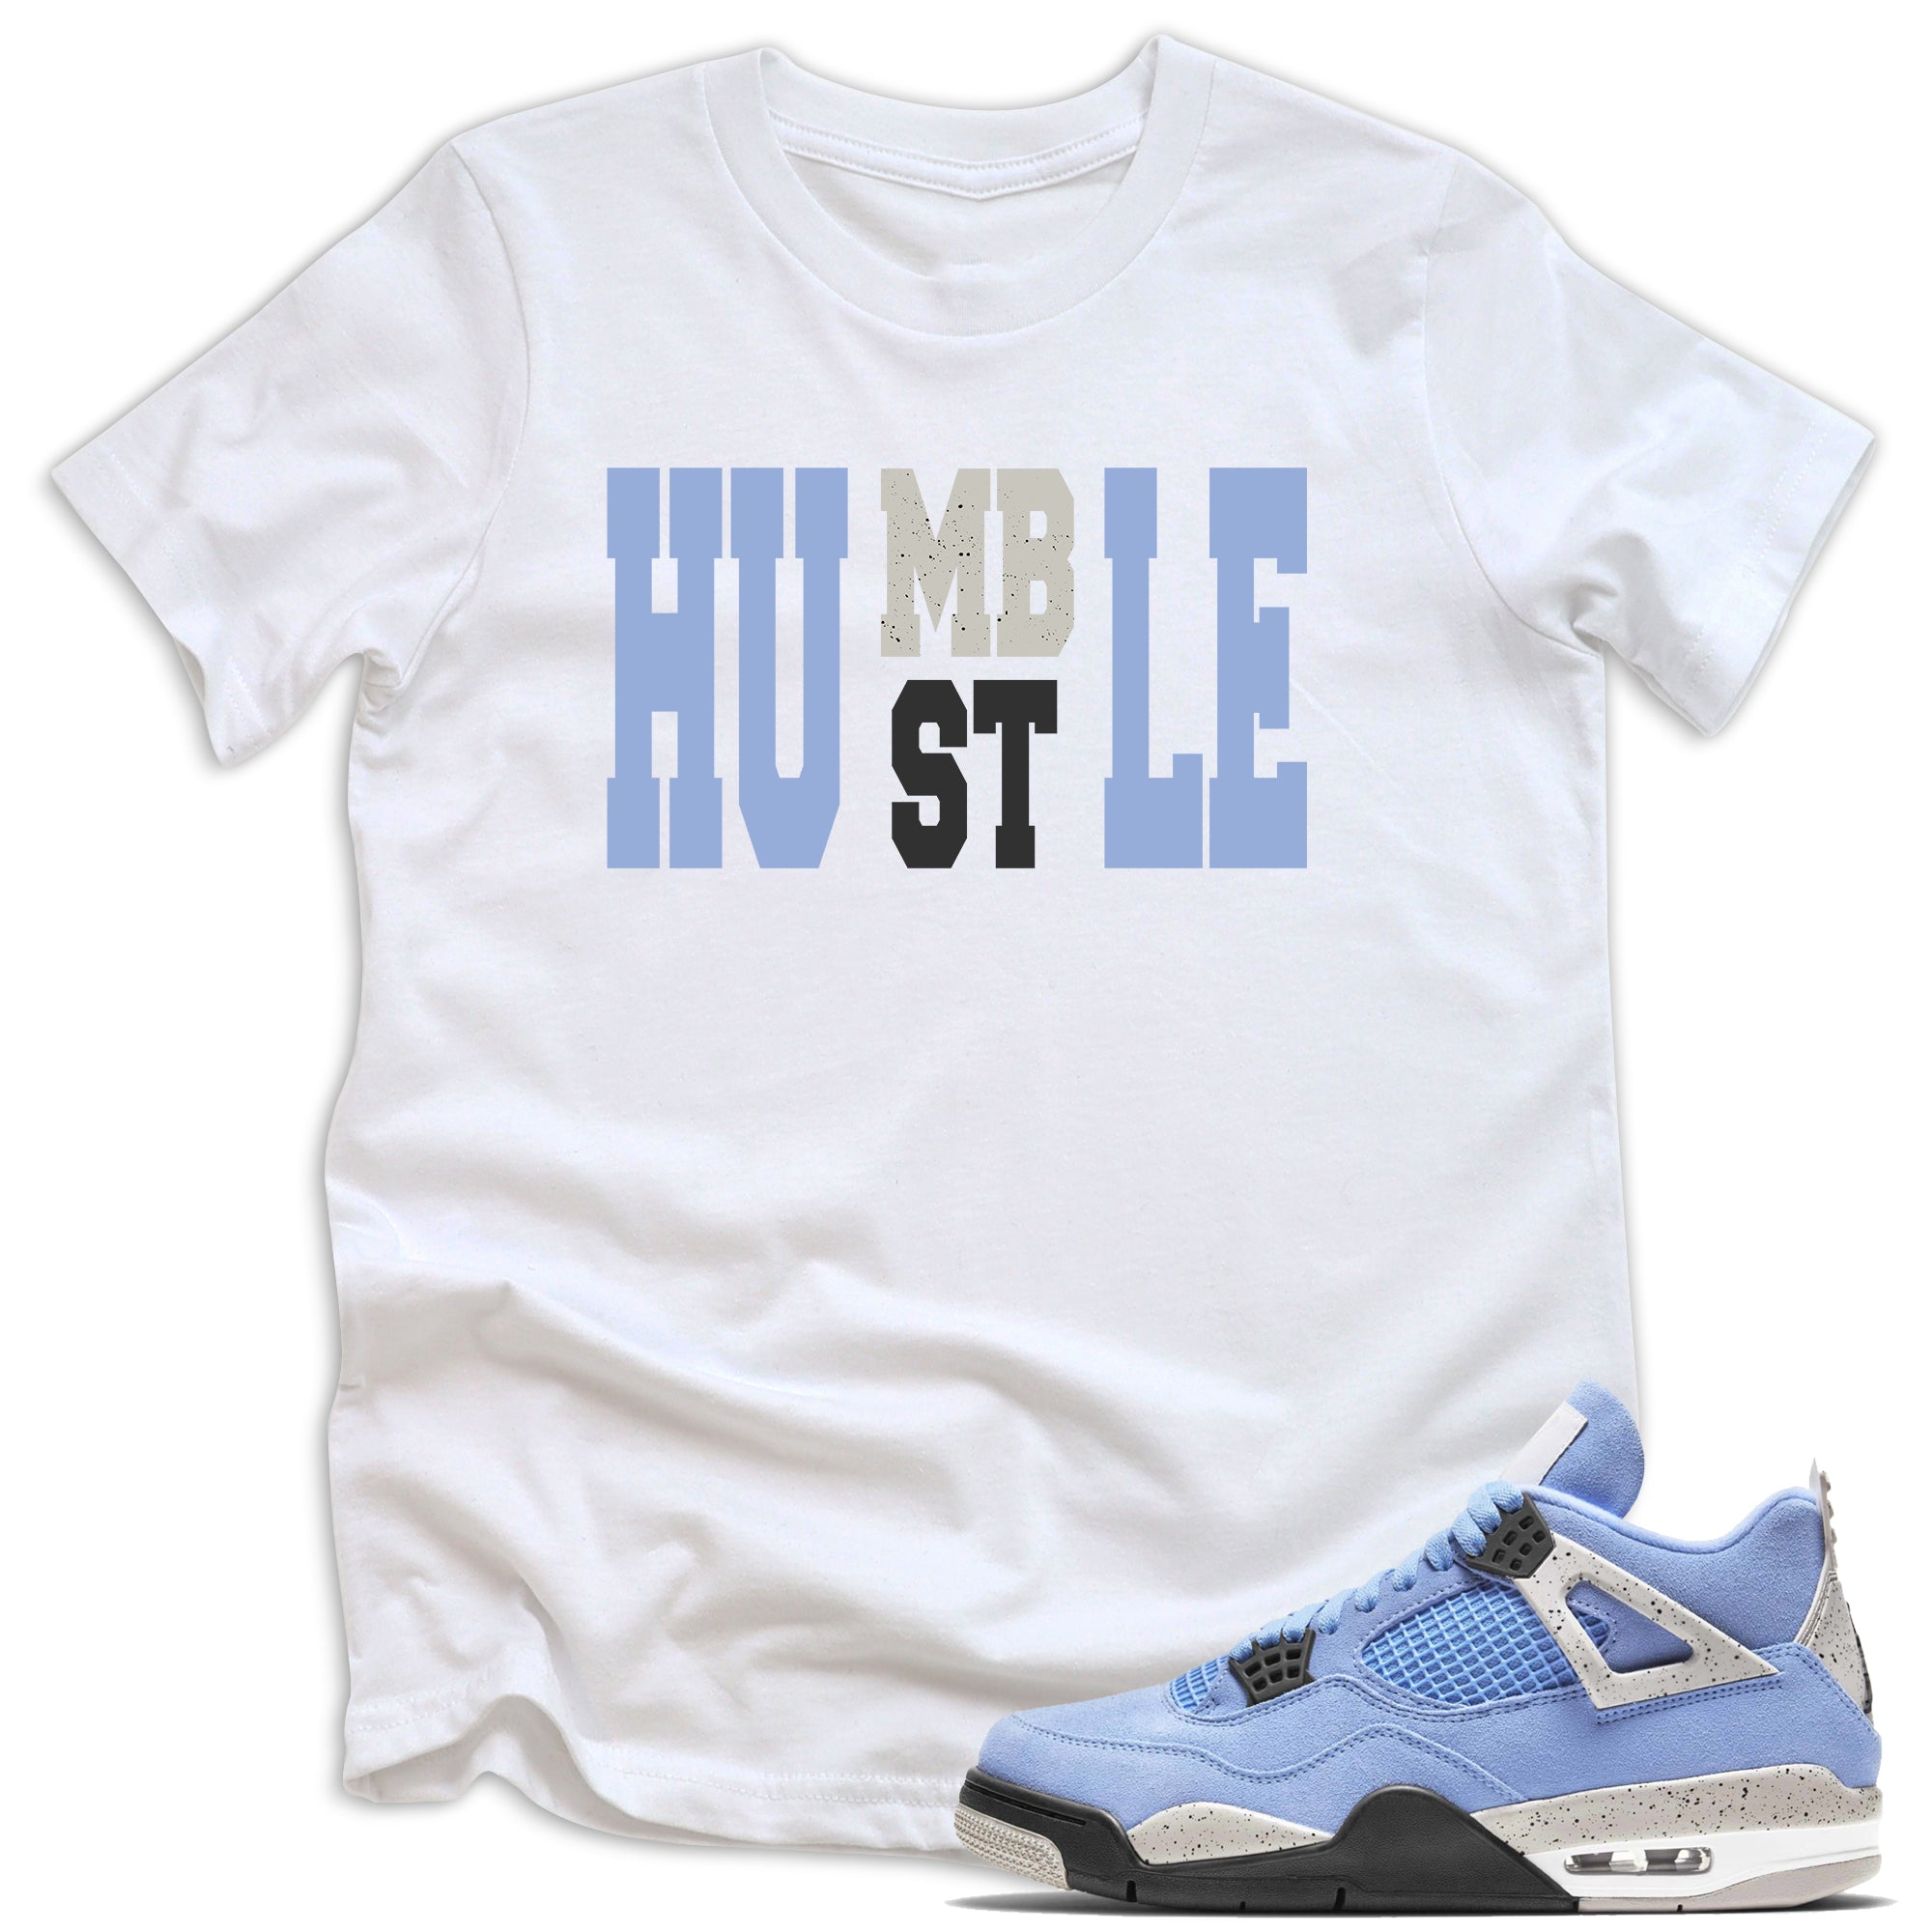 Humble Hustle Shirt AJ 4 Retro University Blue photo